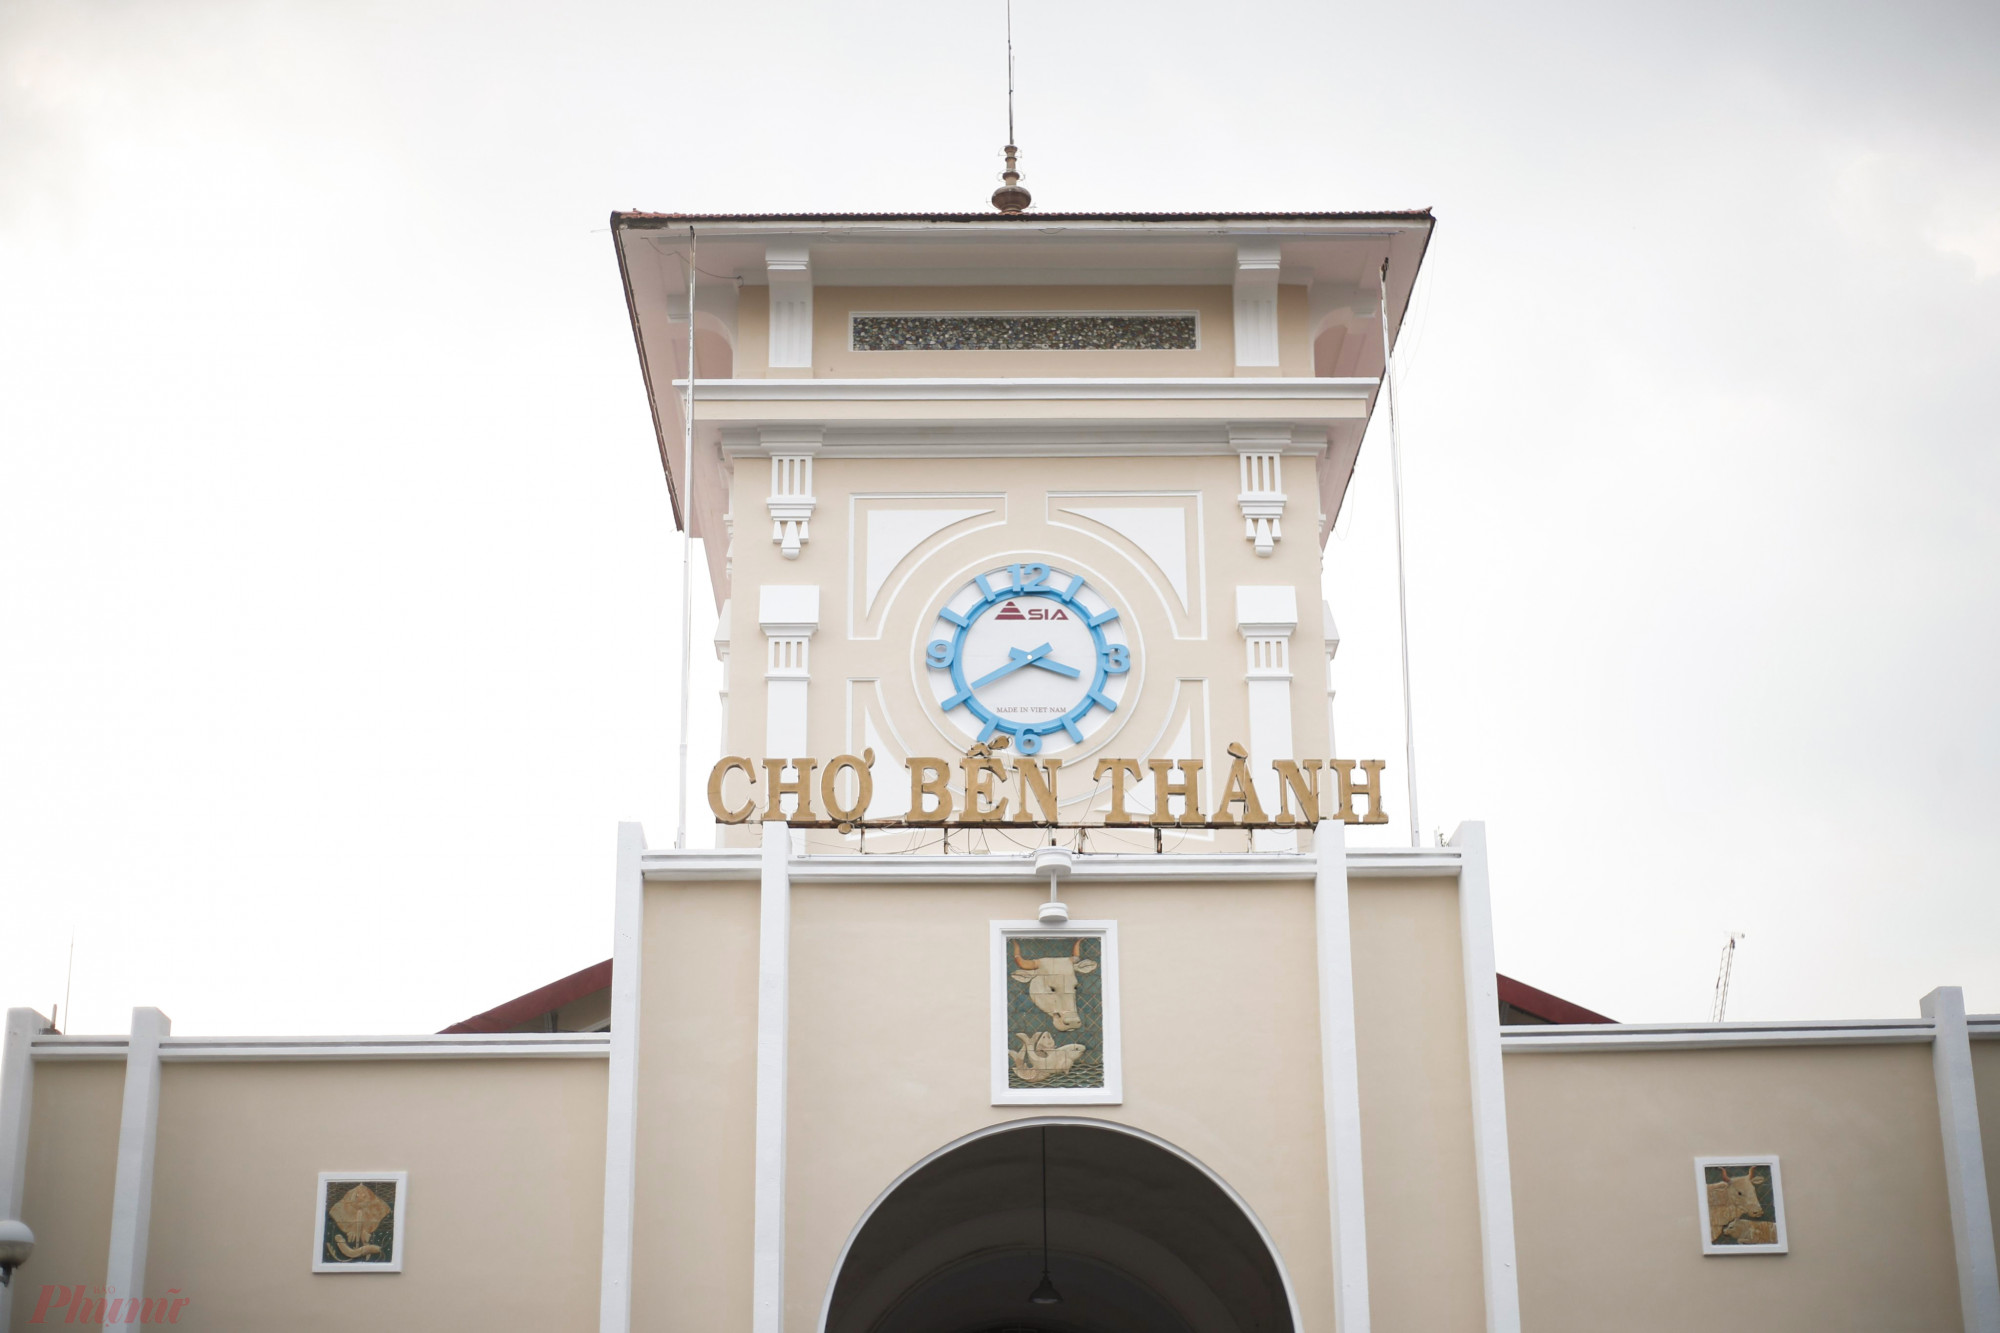 Mặt chính của chợ với tháp đồng hồ đã tồn tại hơn 100 năm qua, là một trong những biểu tượng mang đậm dấu ấn lịch sử của thành phố cùng với Nhà thờ Đức Bà, Bưu điện thành phố...